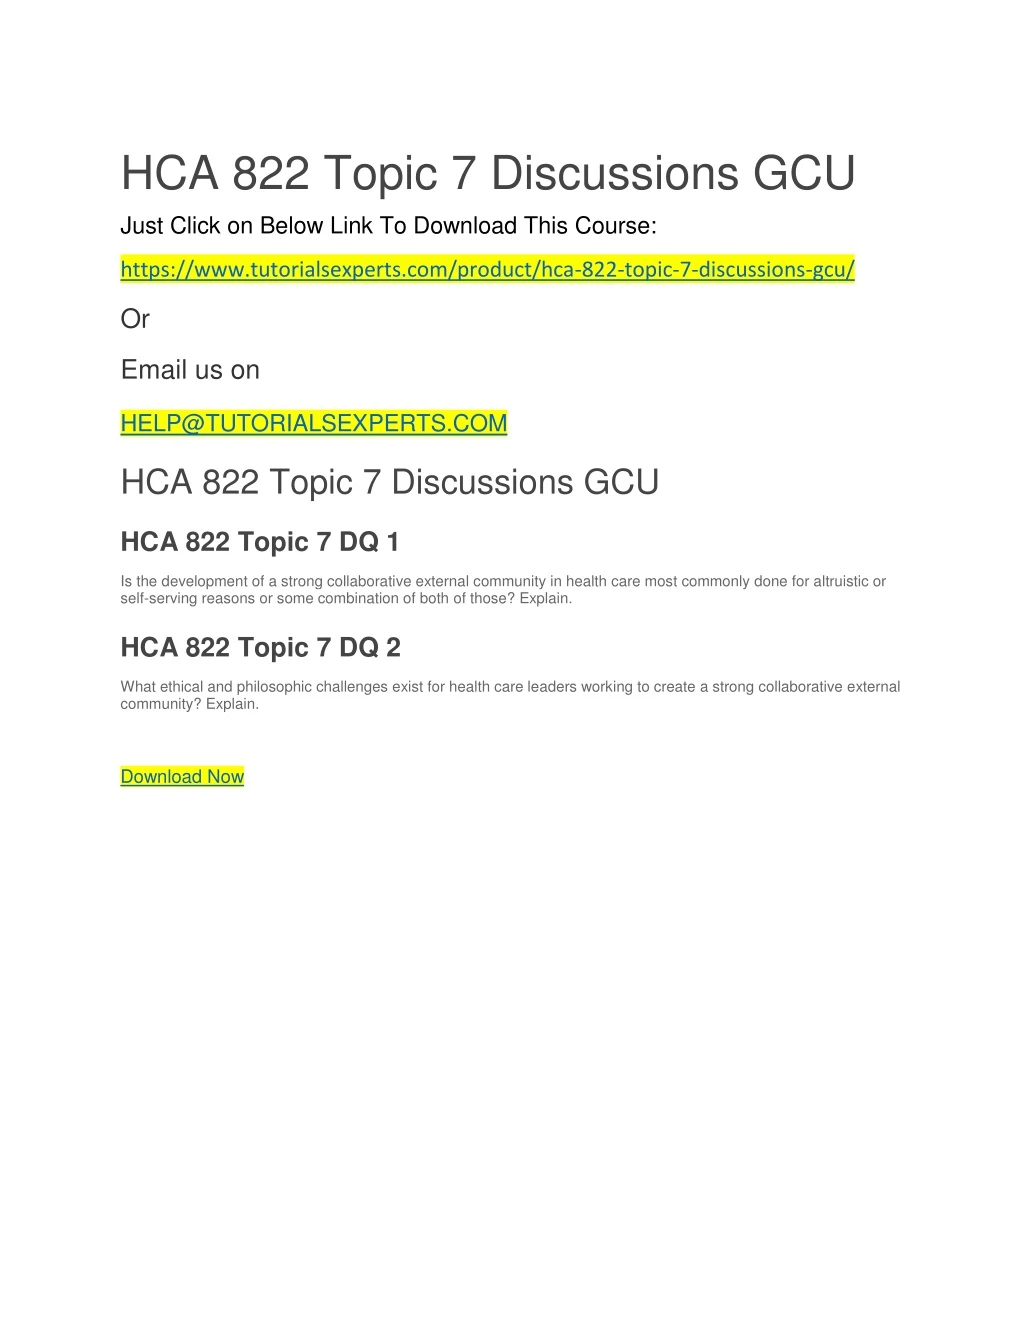 hca 822 topic 7 discussions gcu just click